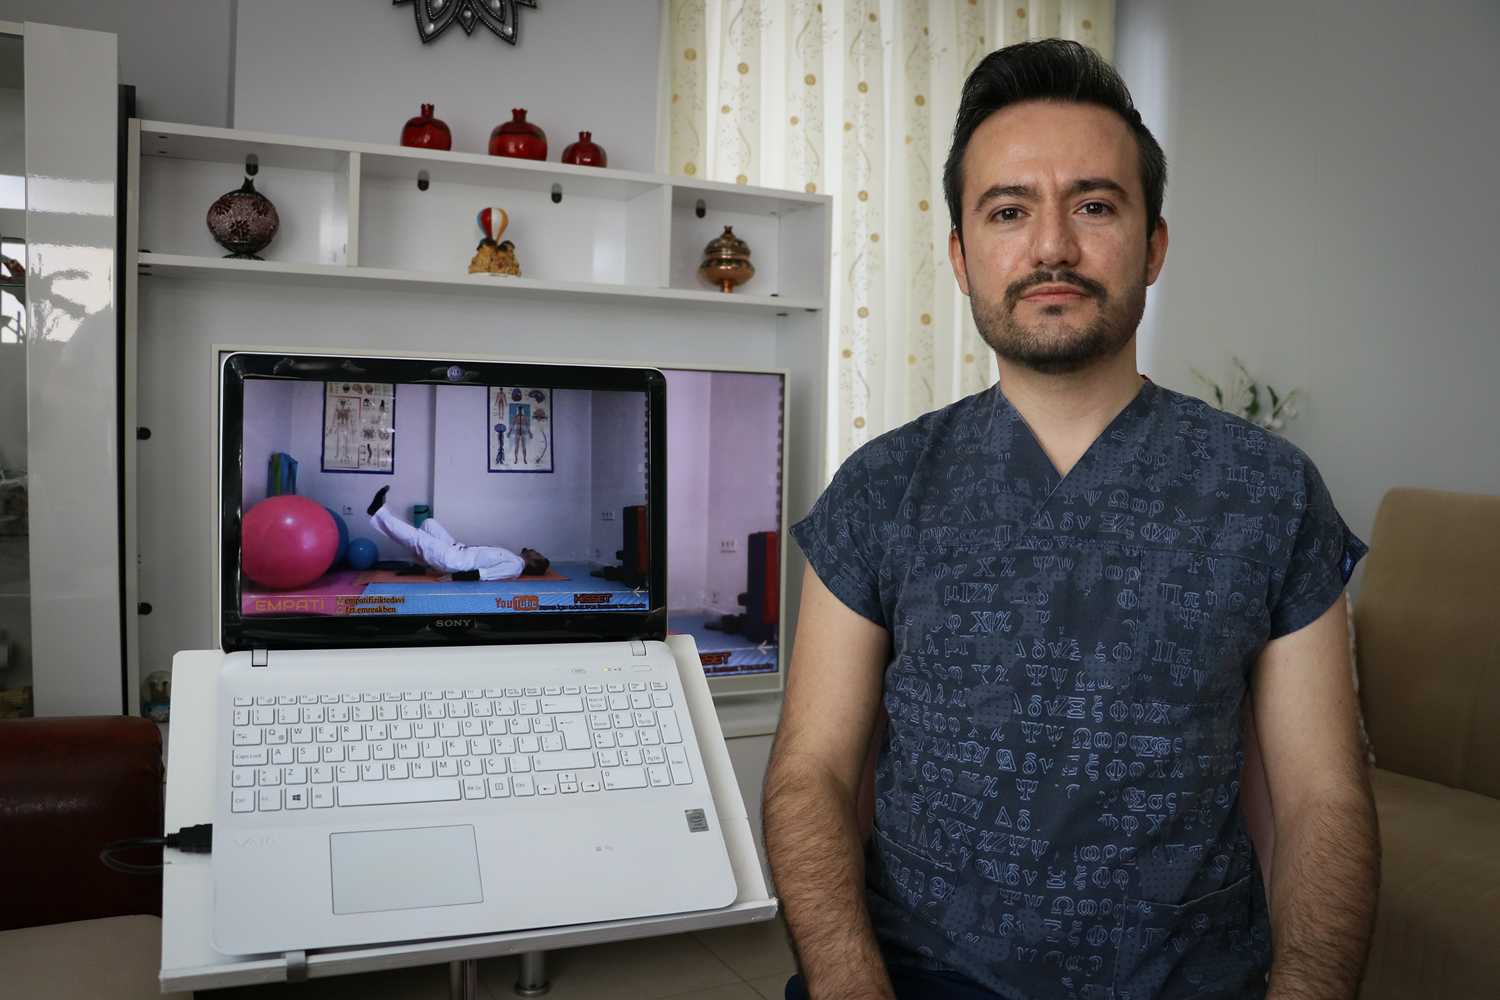 Koronavirs srecinde fizik tedavi hastalarna 'online' destek salyor